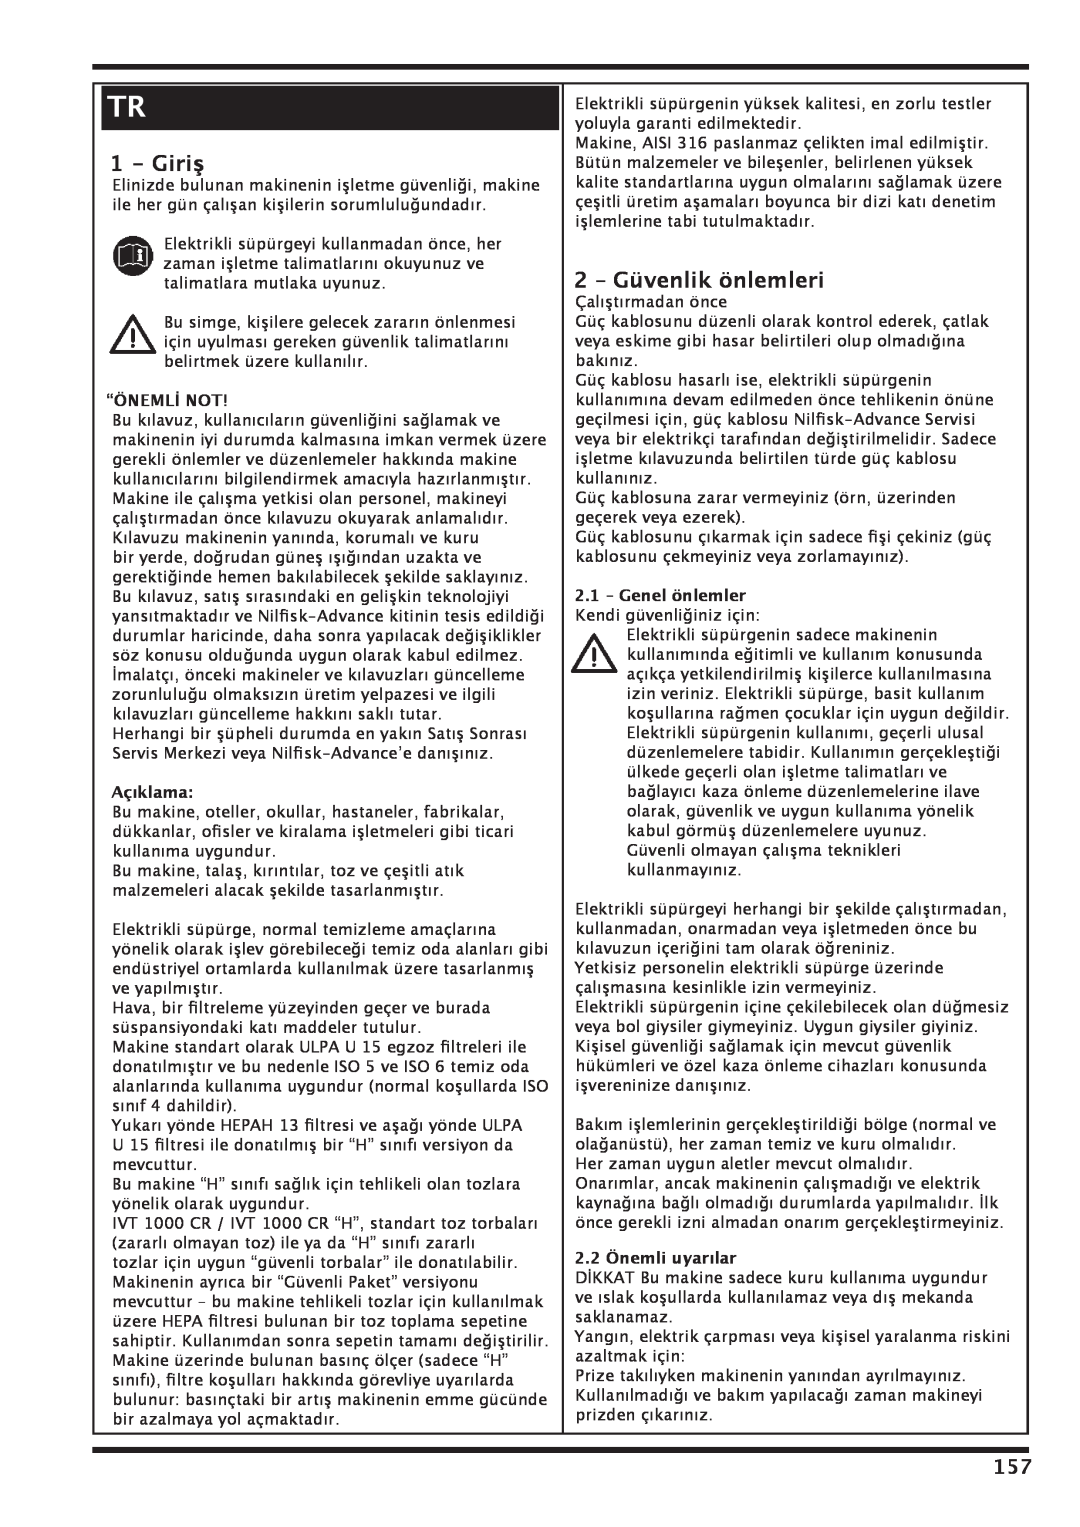 Nilfisk-Advance America IVT 1000 CR H Giriş, 2 – Güvenlik önlemleri, “Önemli Not, Açıklama, 2.2 Önemli uyarılar 